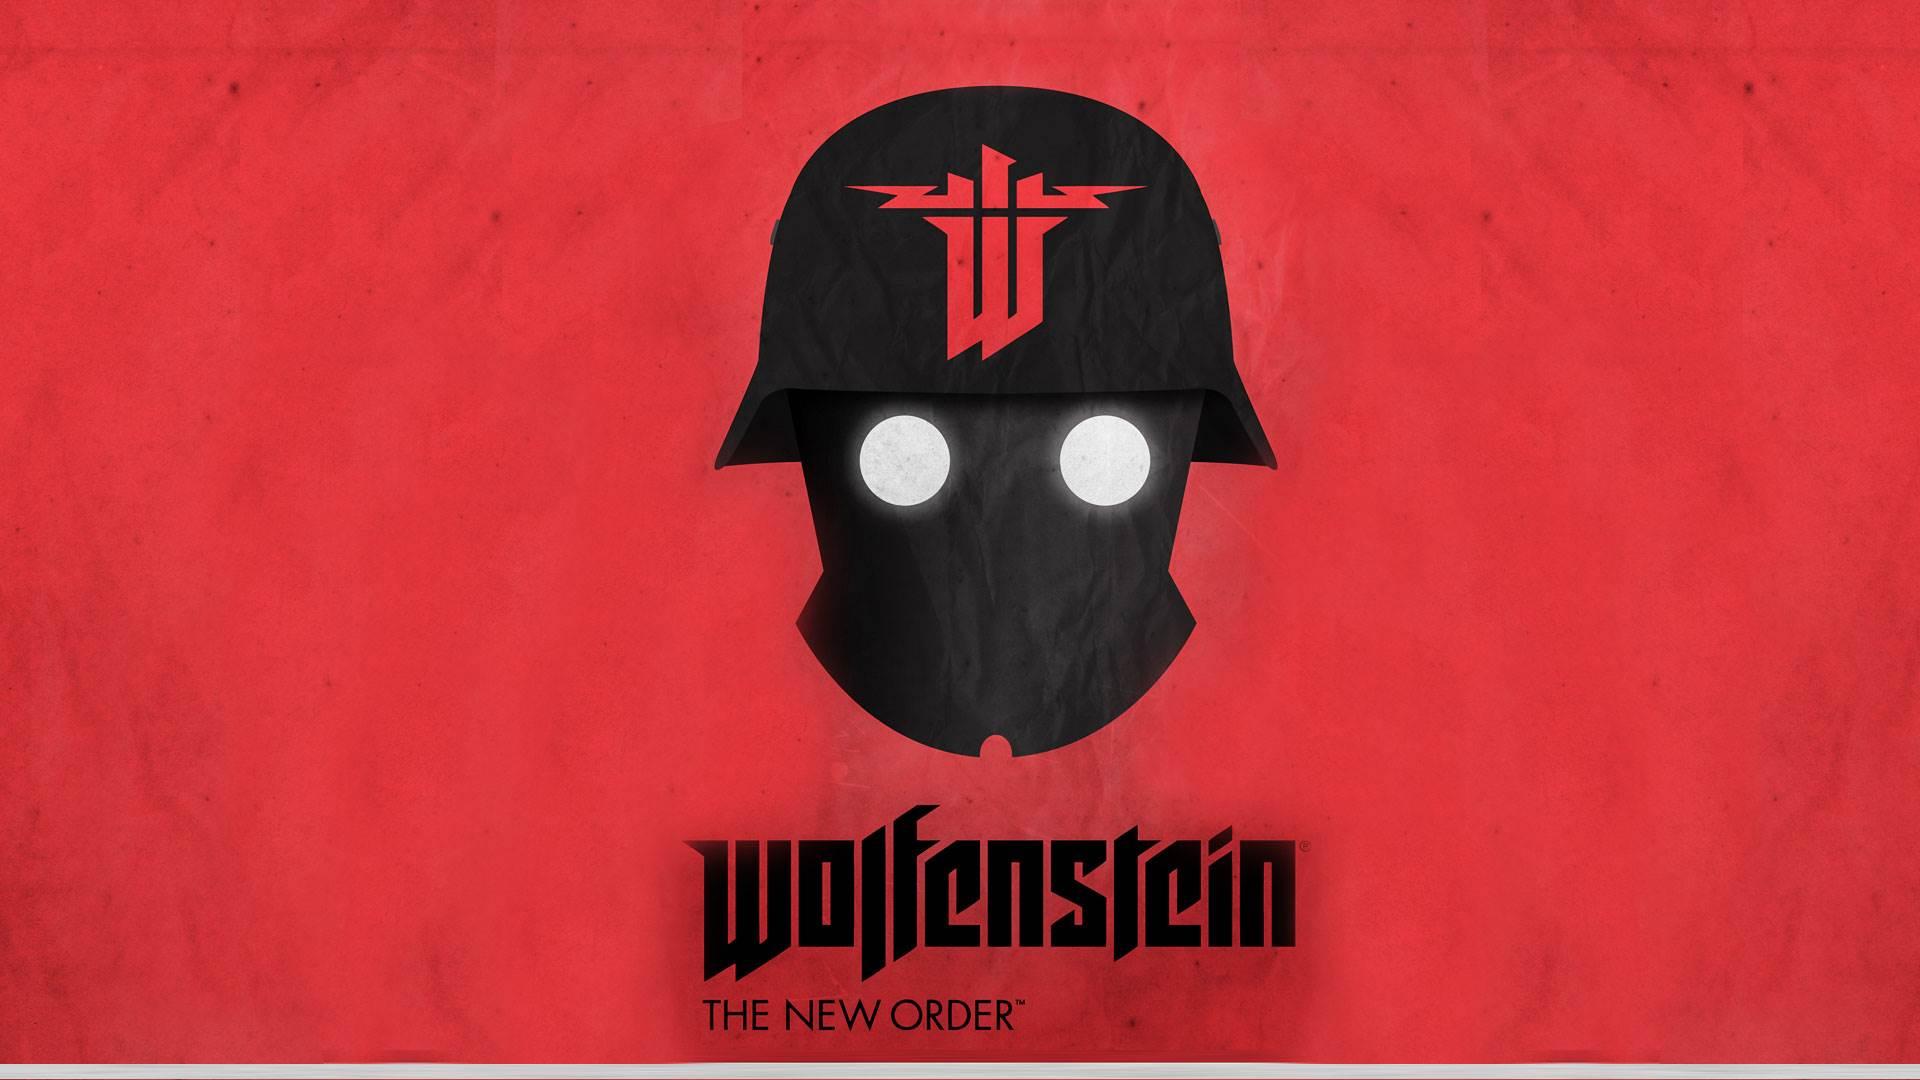 Wolfenstein The New Order Wallpaper in 1080P HD